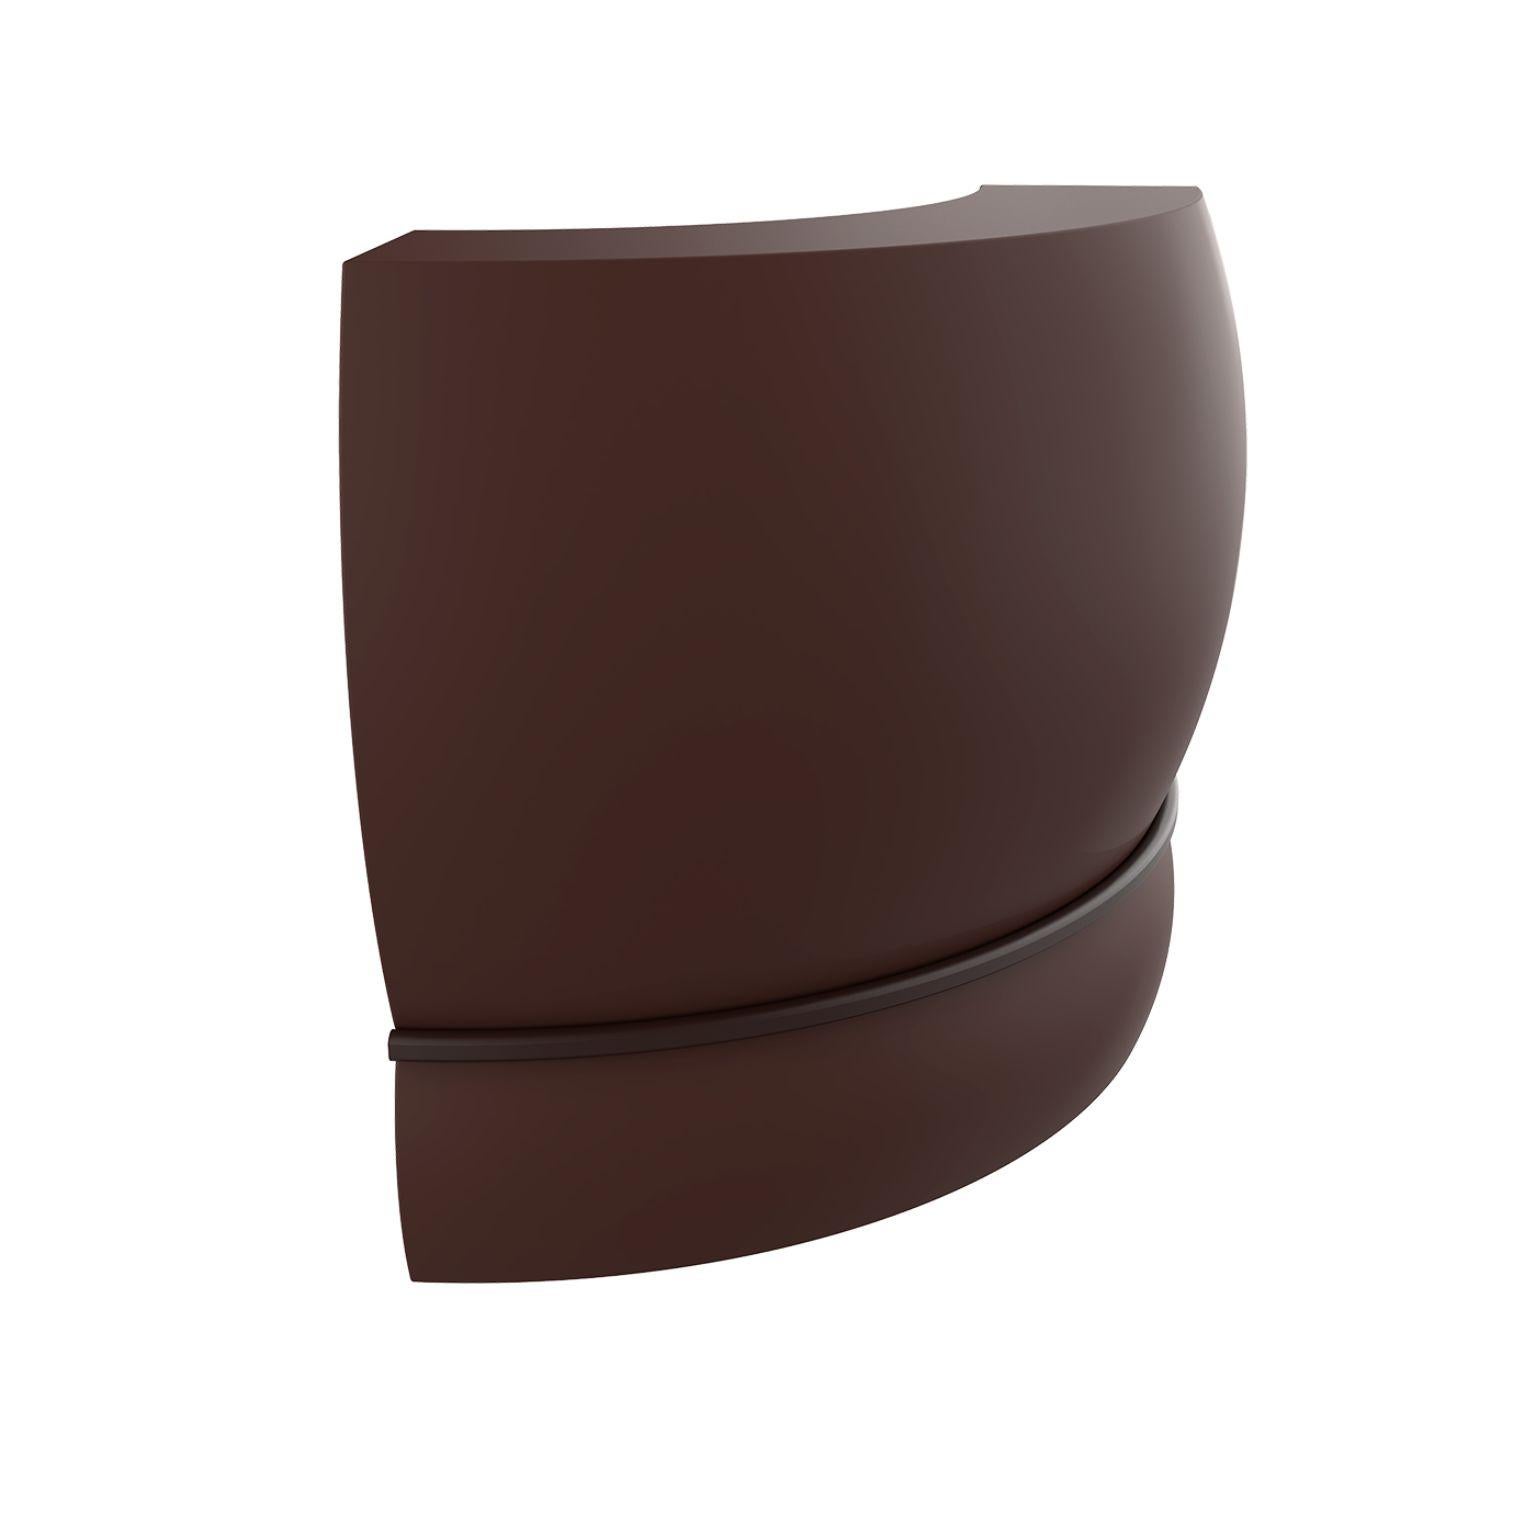 Gebogener Schokoladen-Spitzenriegel von Mowee
Abmessungen: T100 x B100 x H115 cm.
MATERIAL: Polyethylen und rostfreier Stahl.
Gewicht: 31 kg.
Auch in verschiedenen Farben und Ausführungen (lackiert, nachträglich beleuchtet) erhältlich.